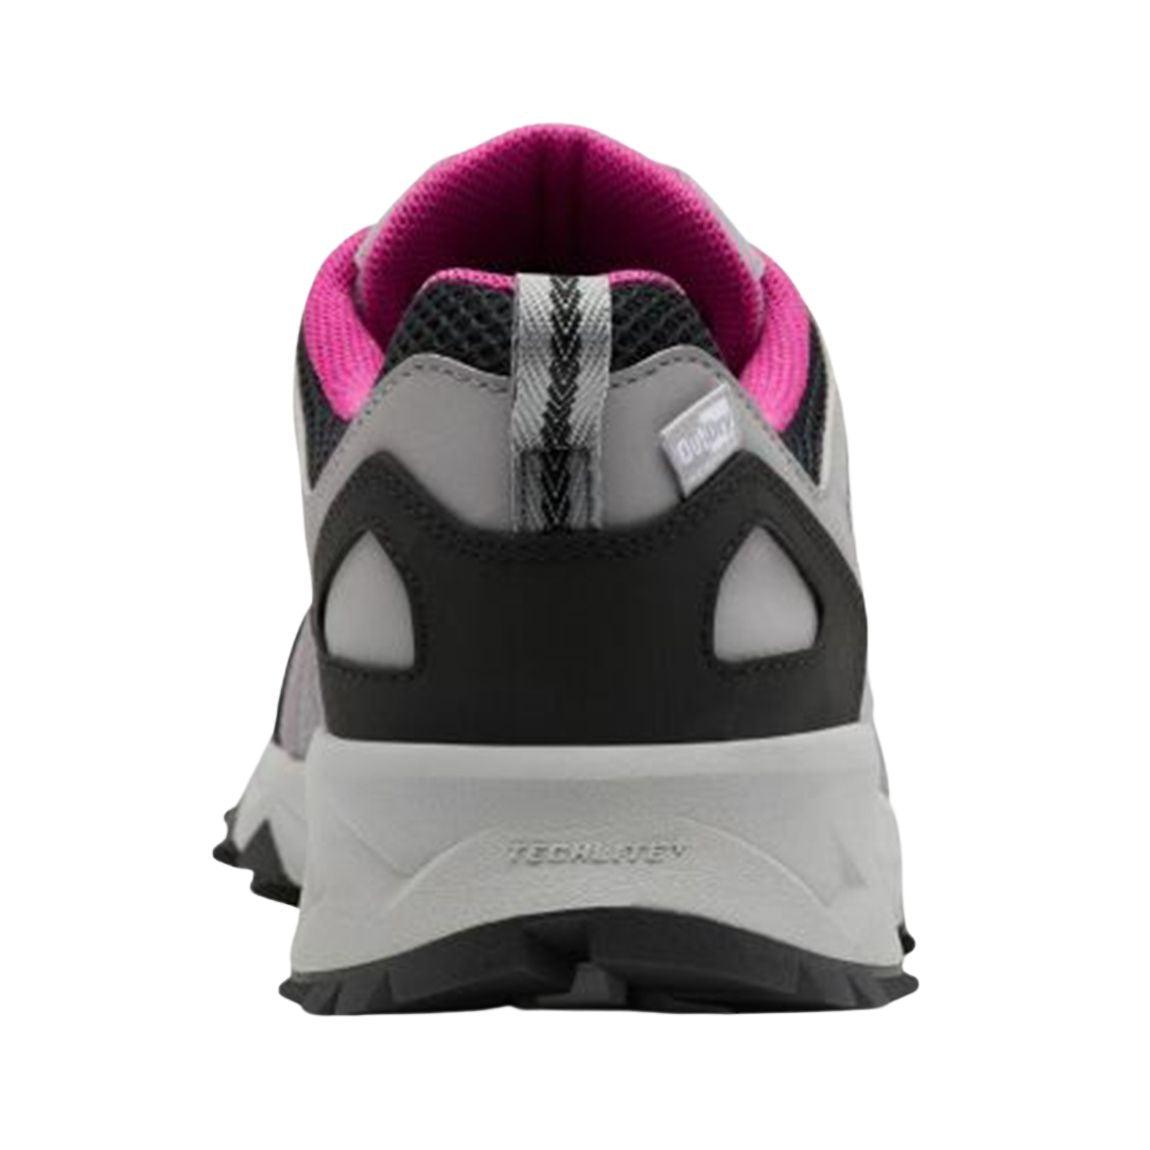 Peakfreak™ II OutDry™ Shoe - Women - Sports Excellence